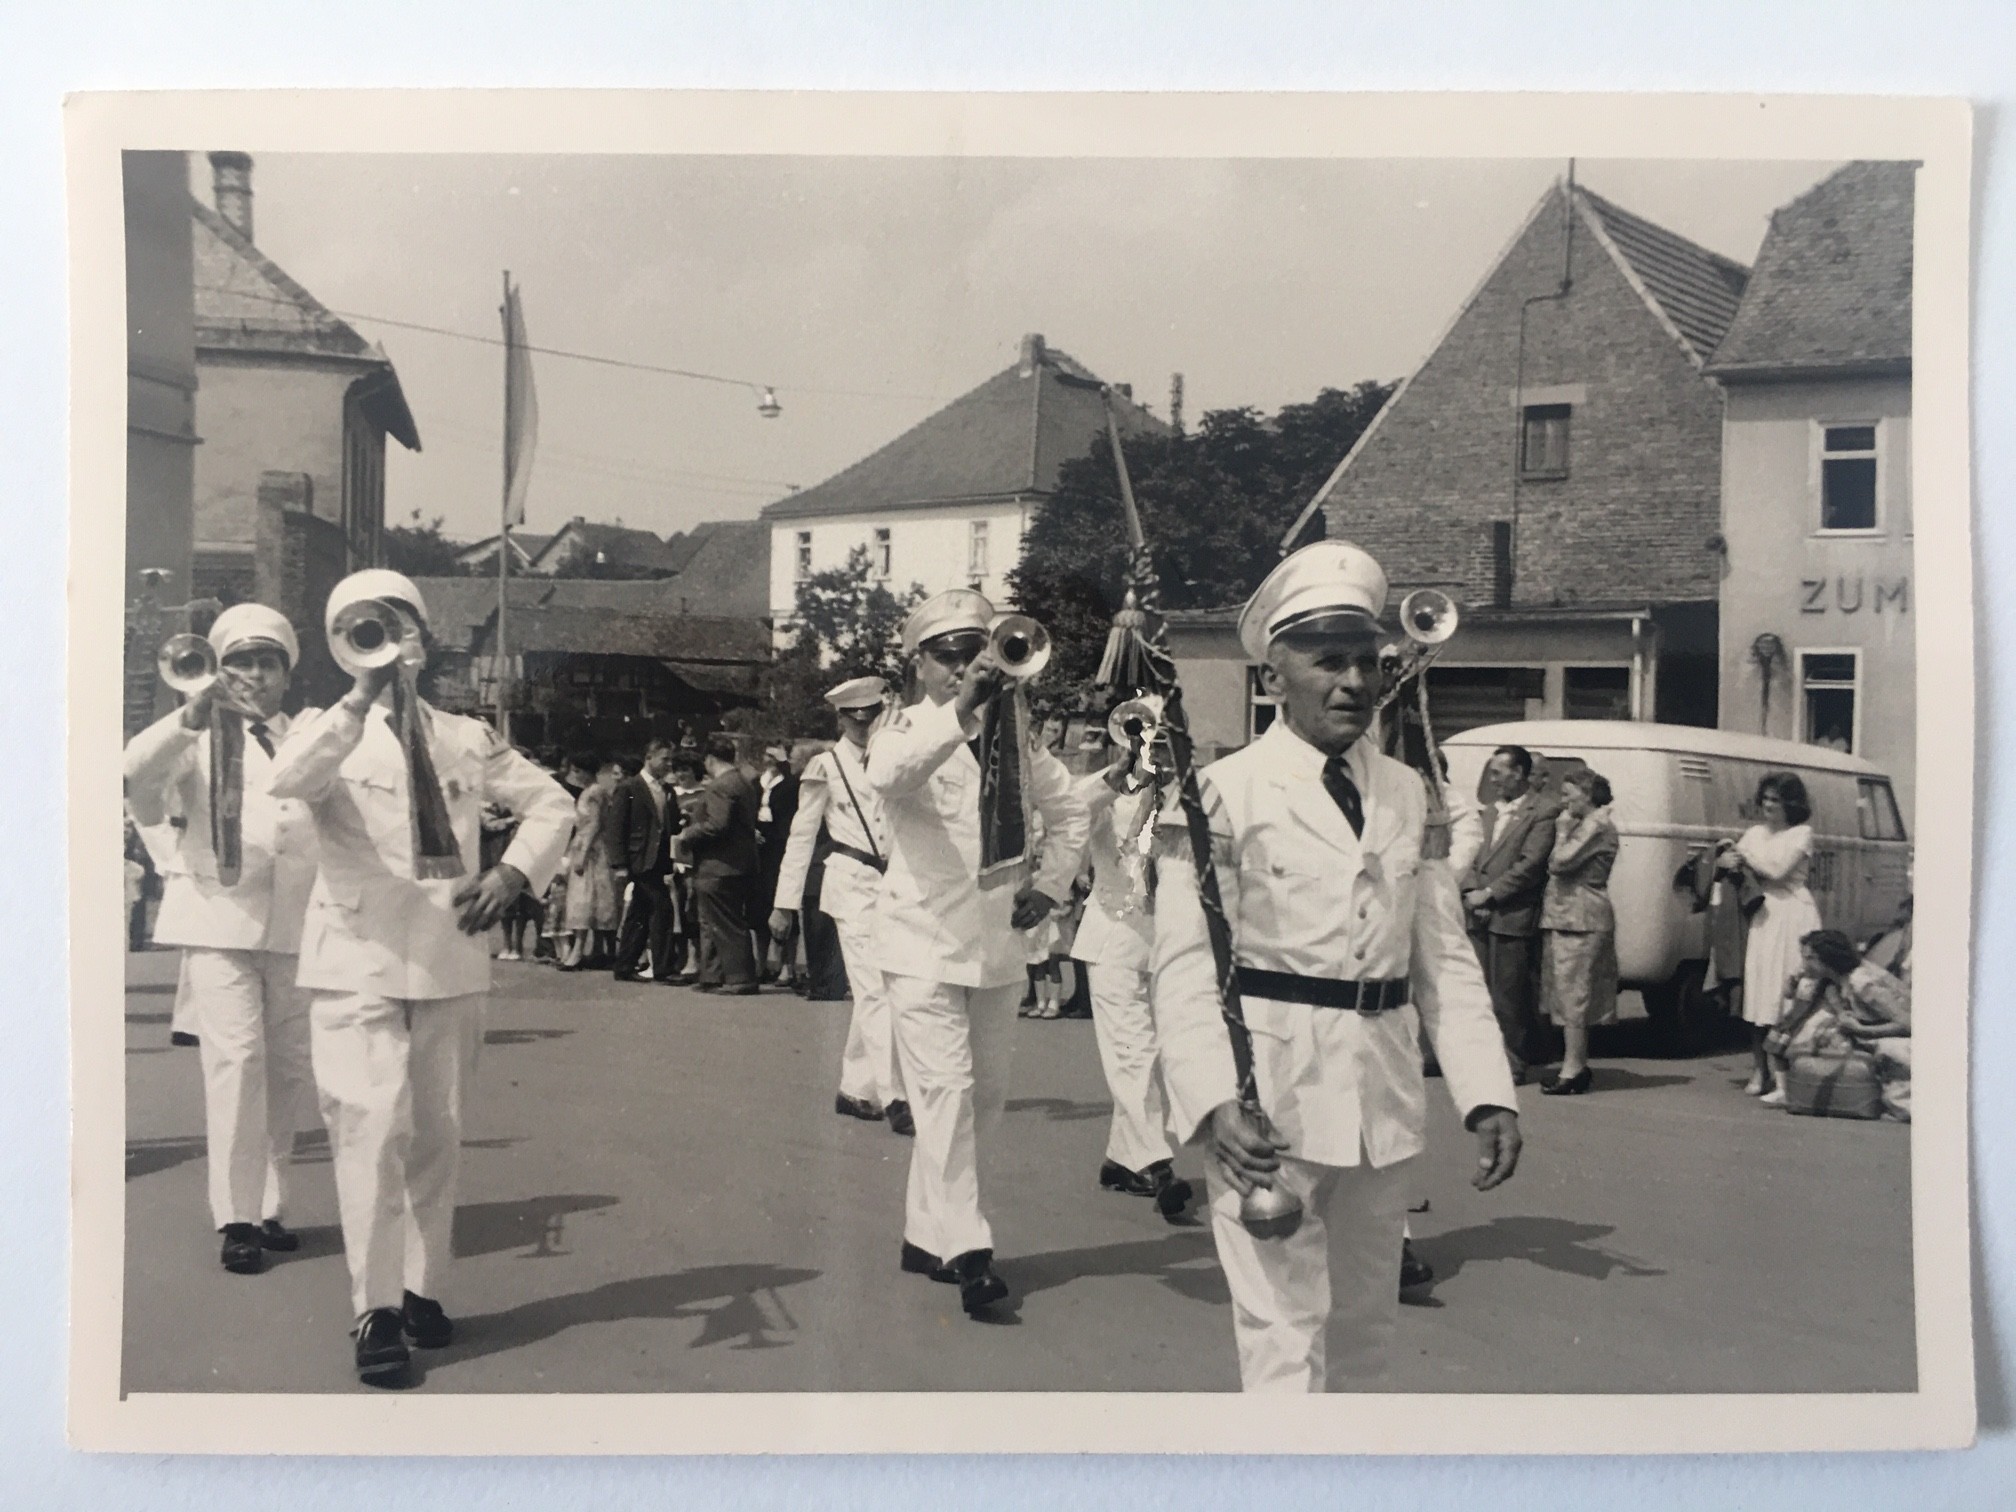 Festumzug wohl anlässlich einer Fahnenweihe Gesangsverein Frohsinn, Steinbach, 1959 (Taunus-Rhein-Main - Regionalgeschichtliche Sammlung Dr. Stefan Naas CC BY-NC-SA)